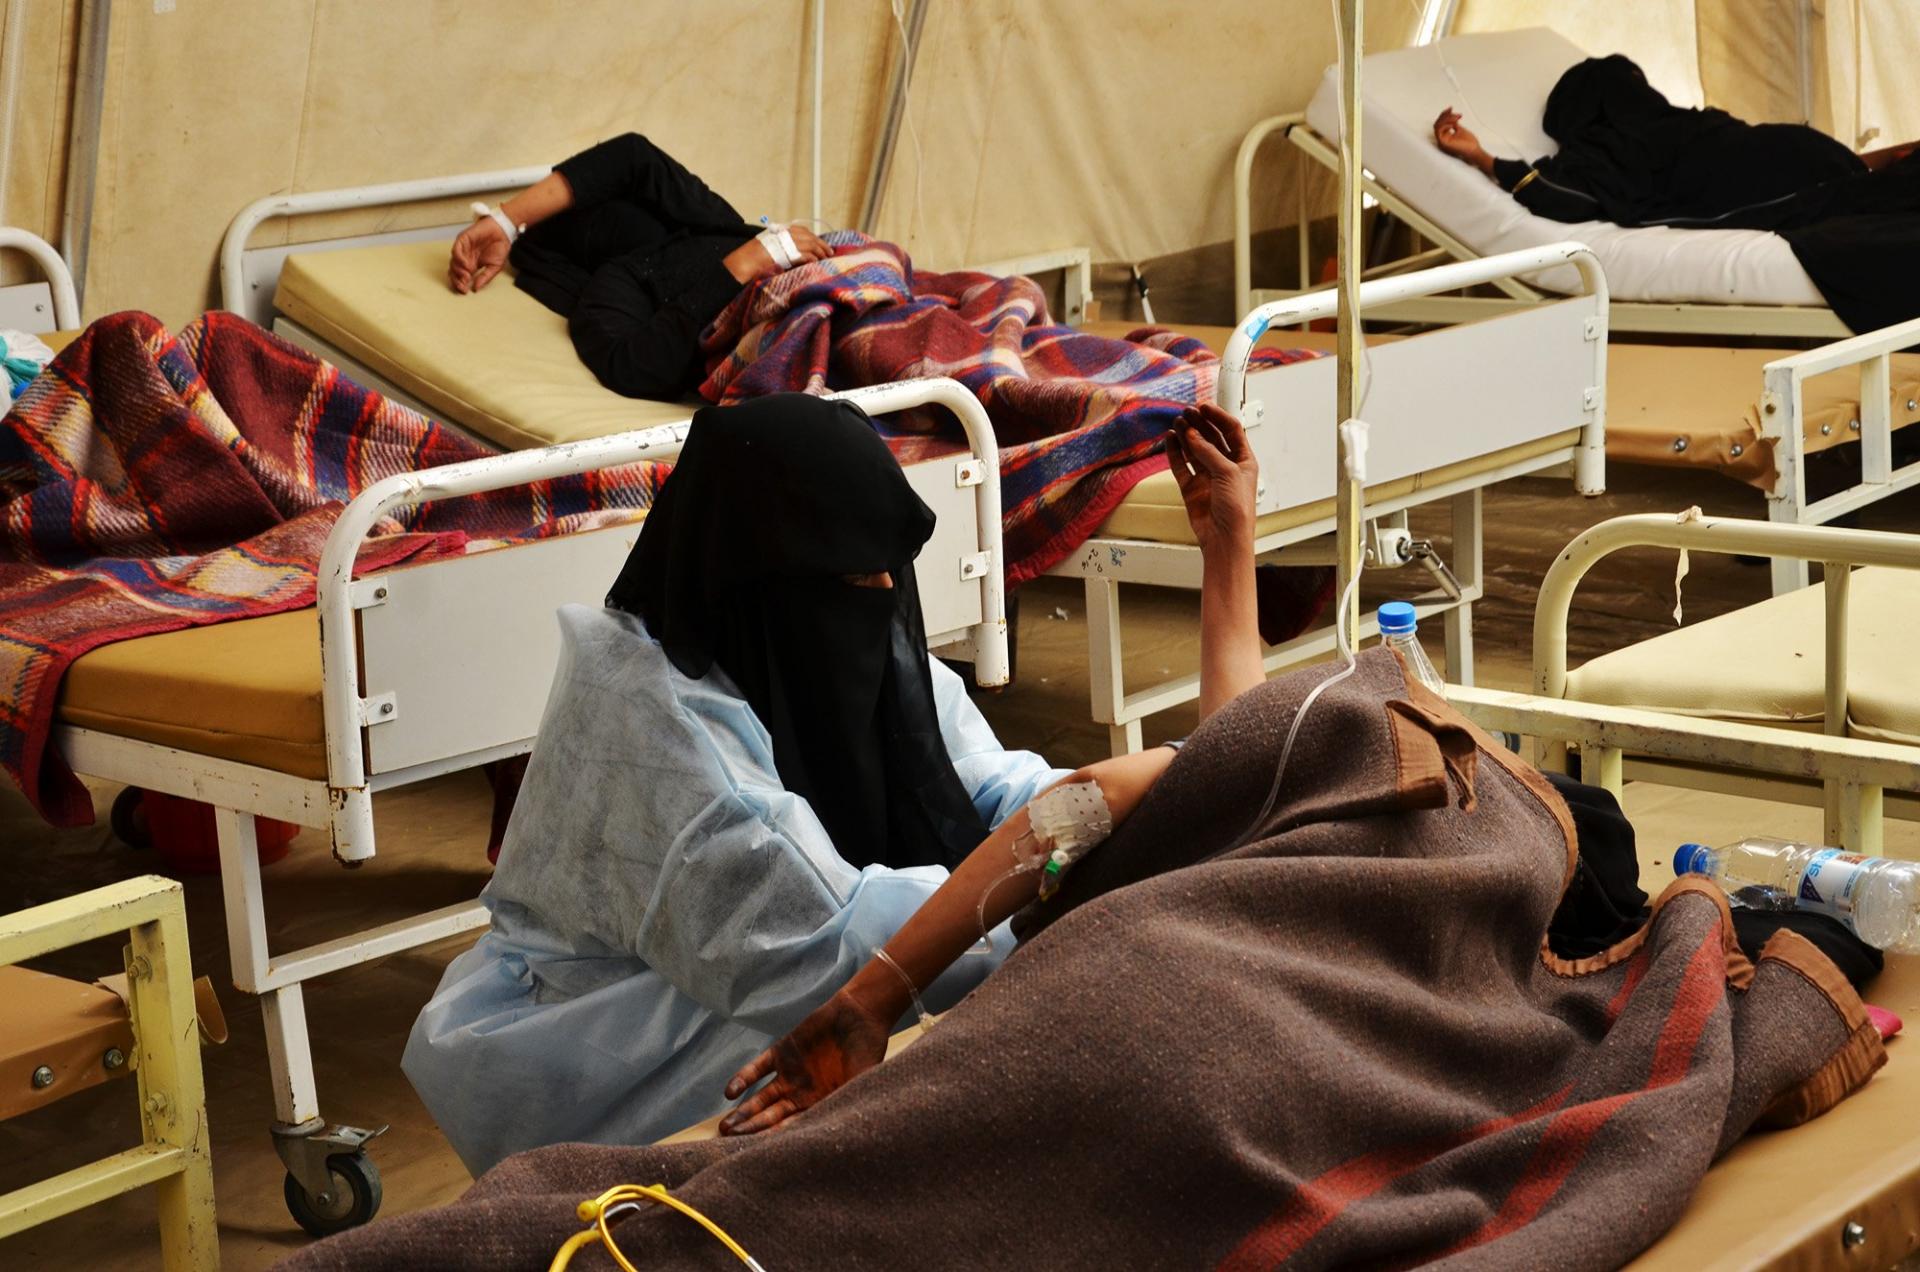 Yemen Cholera Outbreak